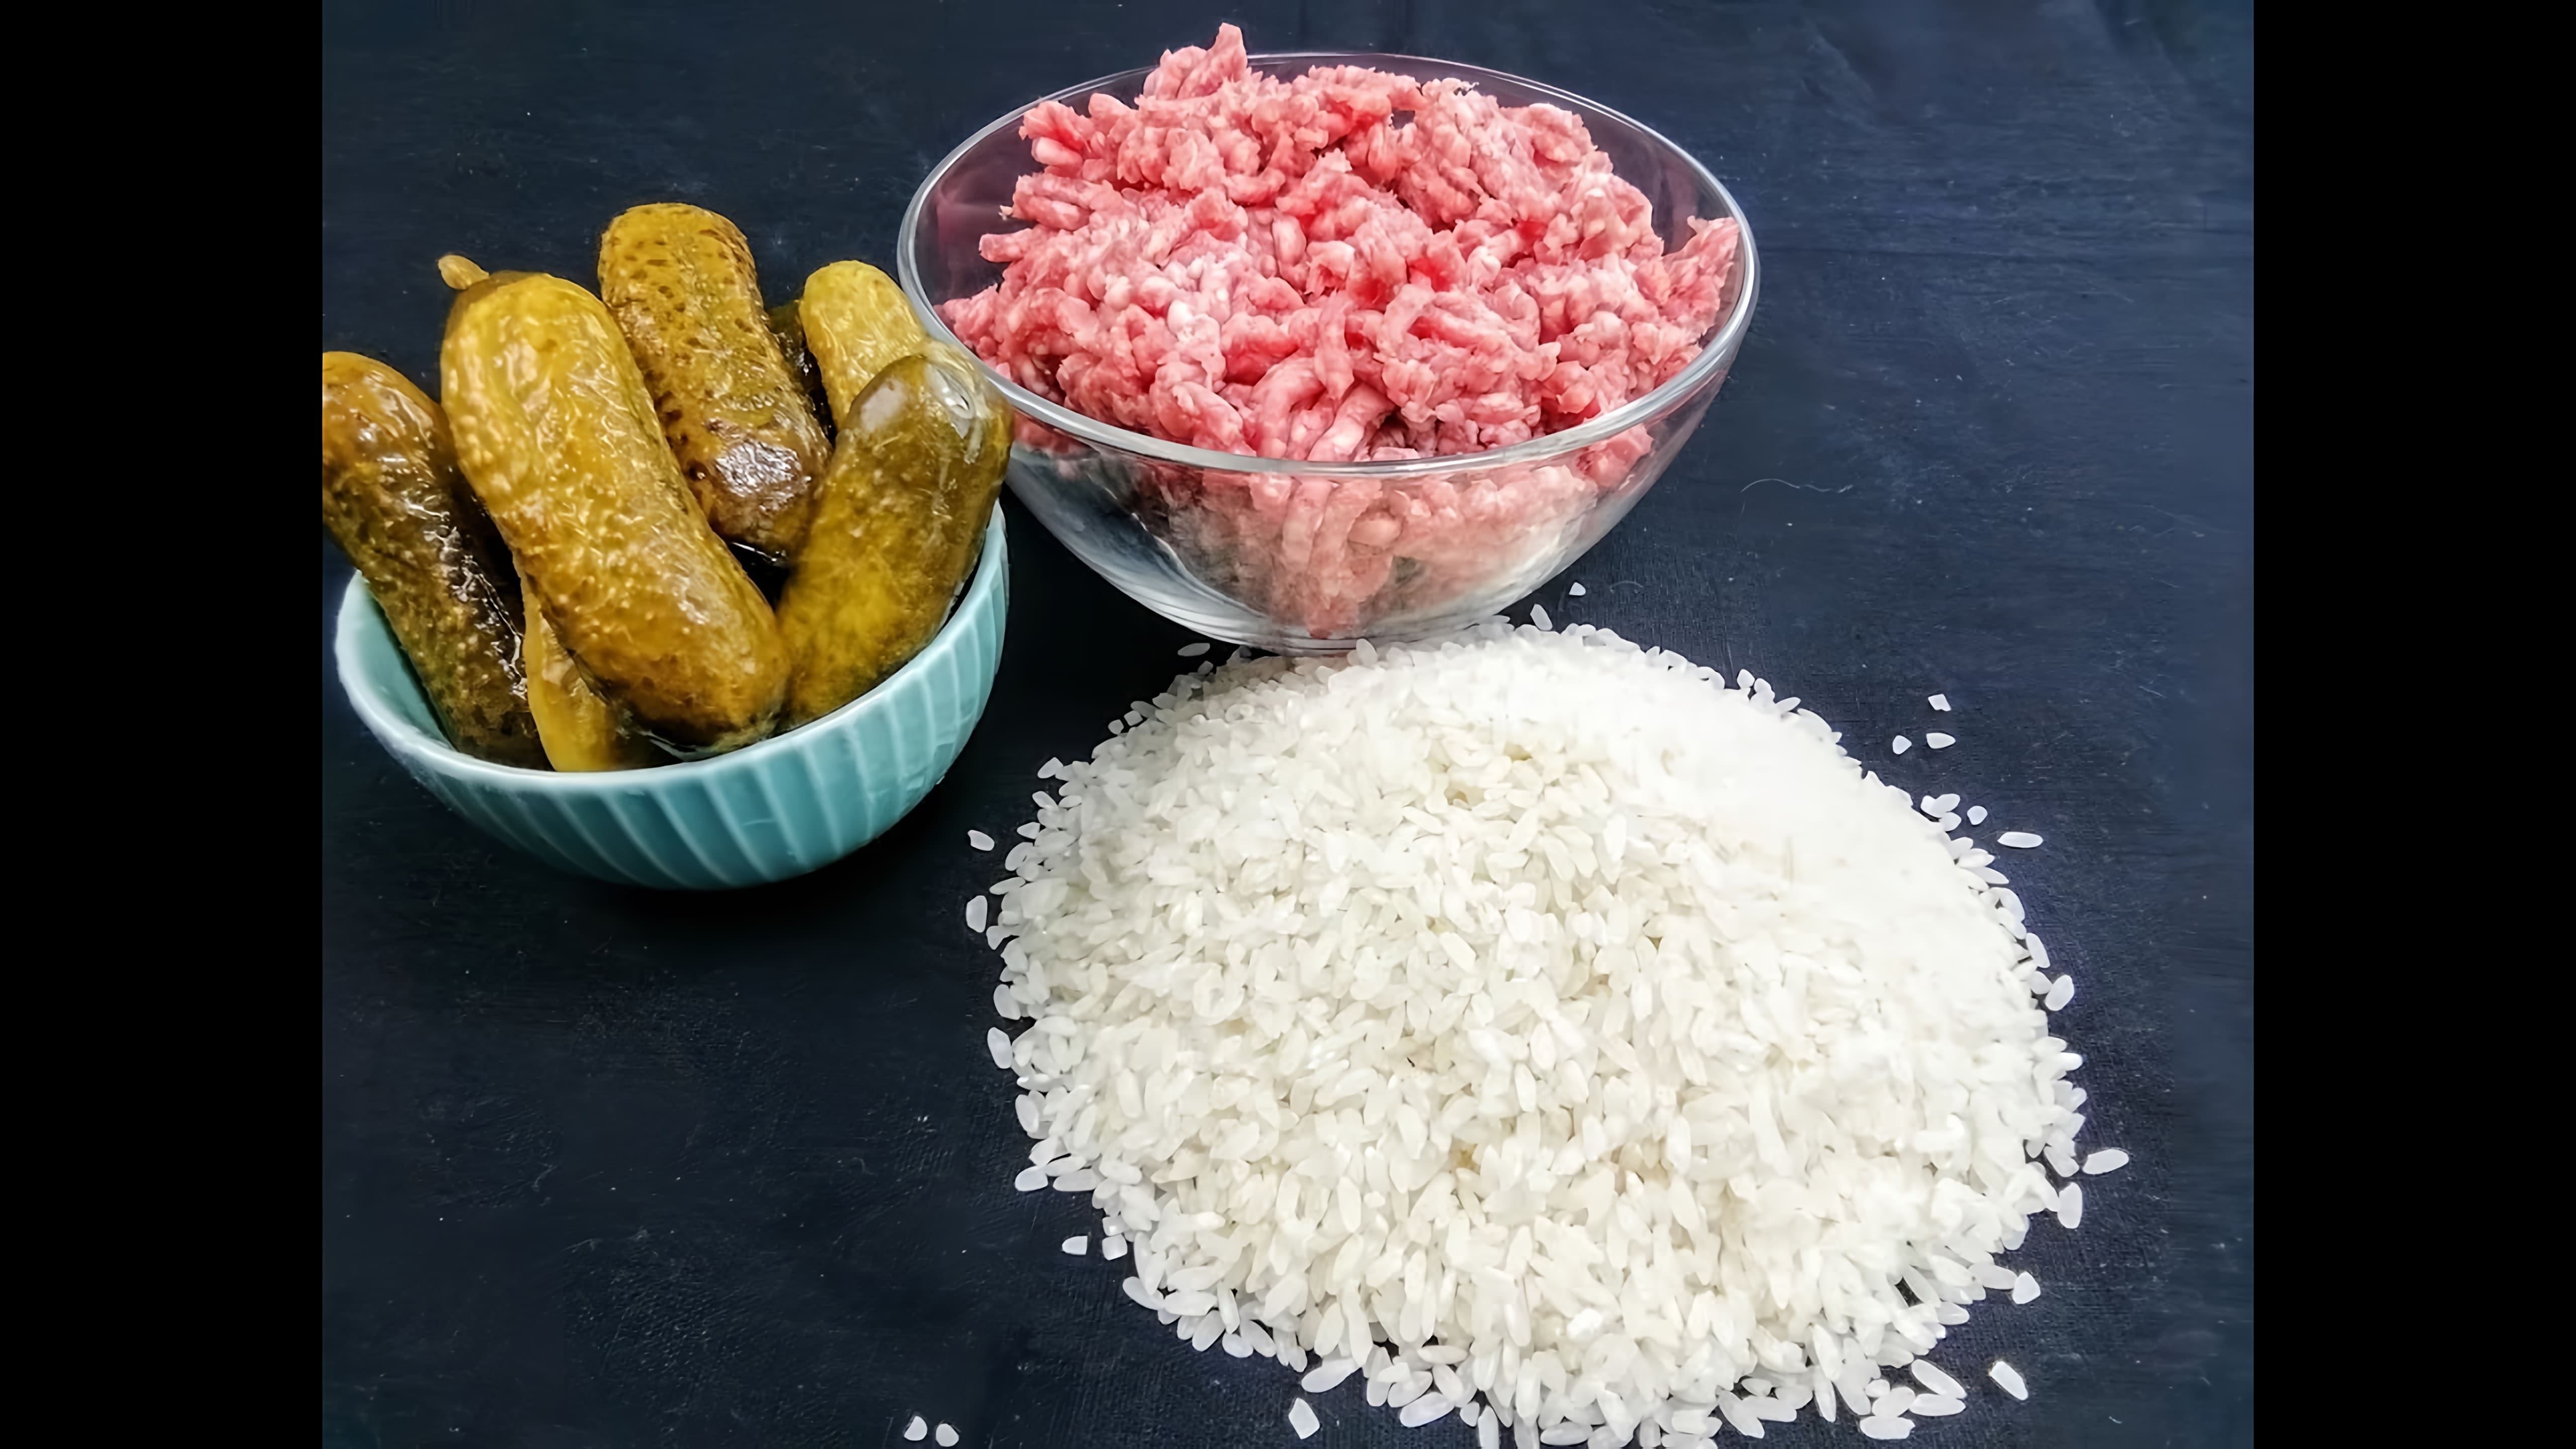 В этом видео демонстрируется процесс приготовления ужина по старинному рецепту, включающему рис, фарш и грибы